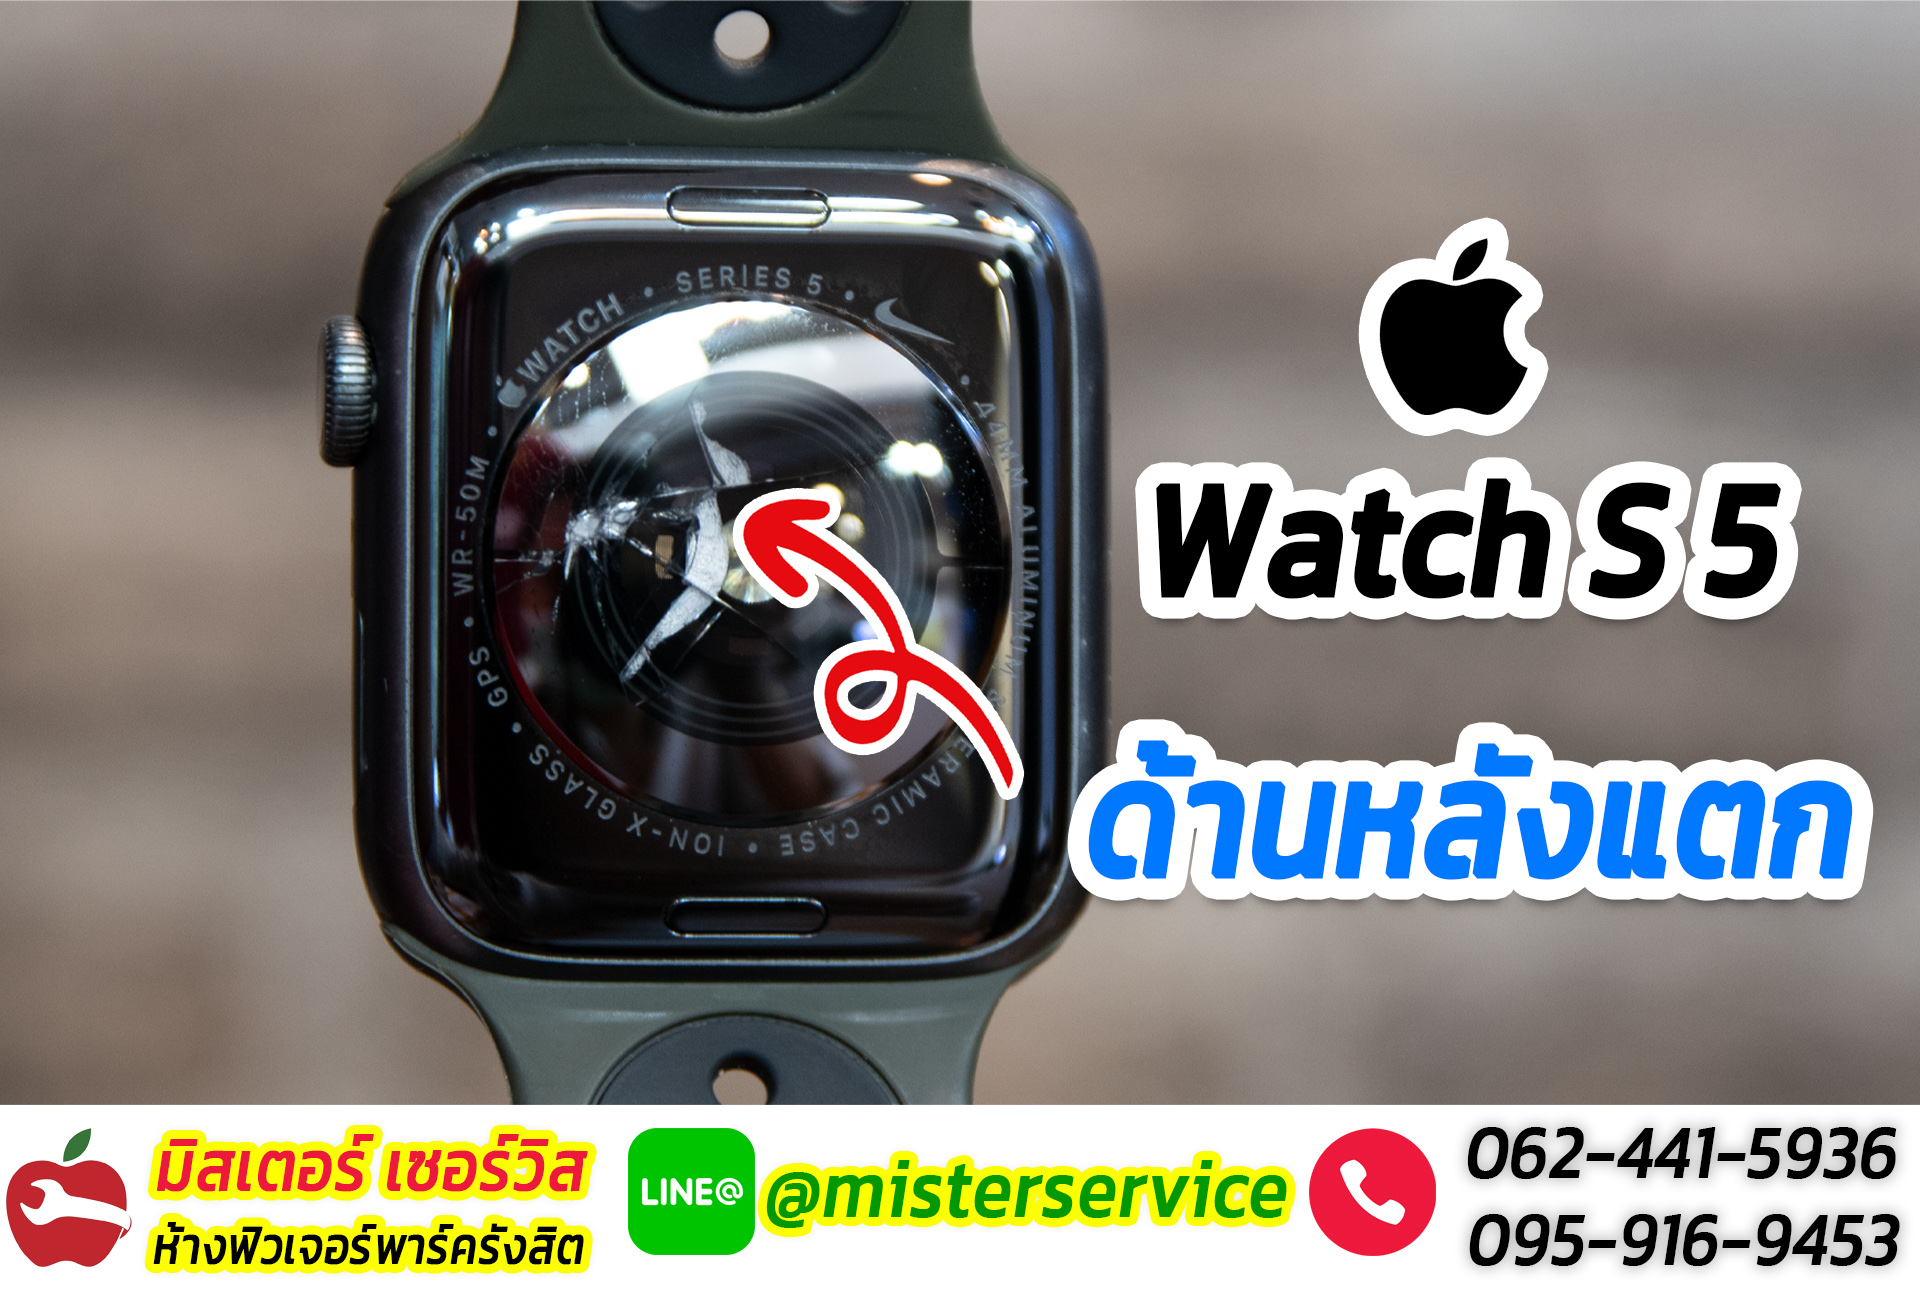 ซ่อม Apple Watch ราชบุรี